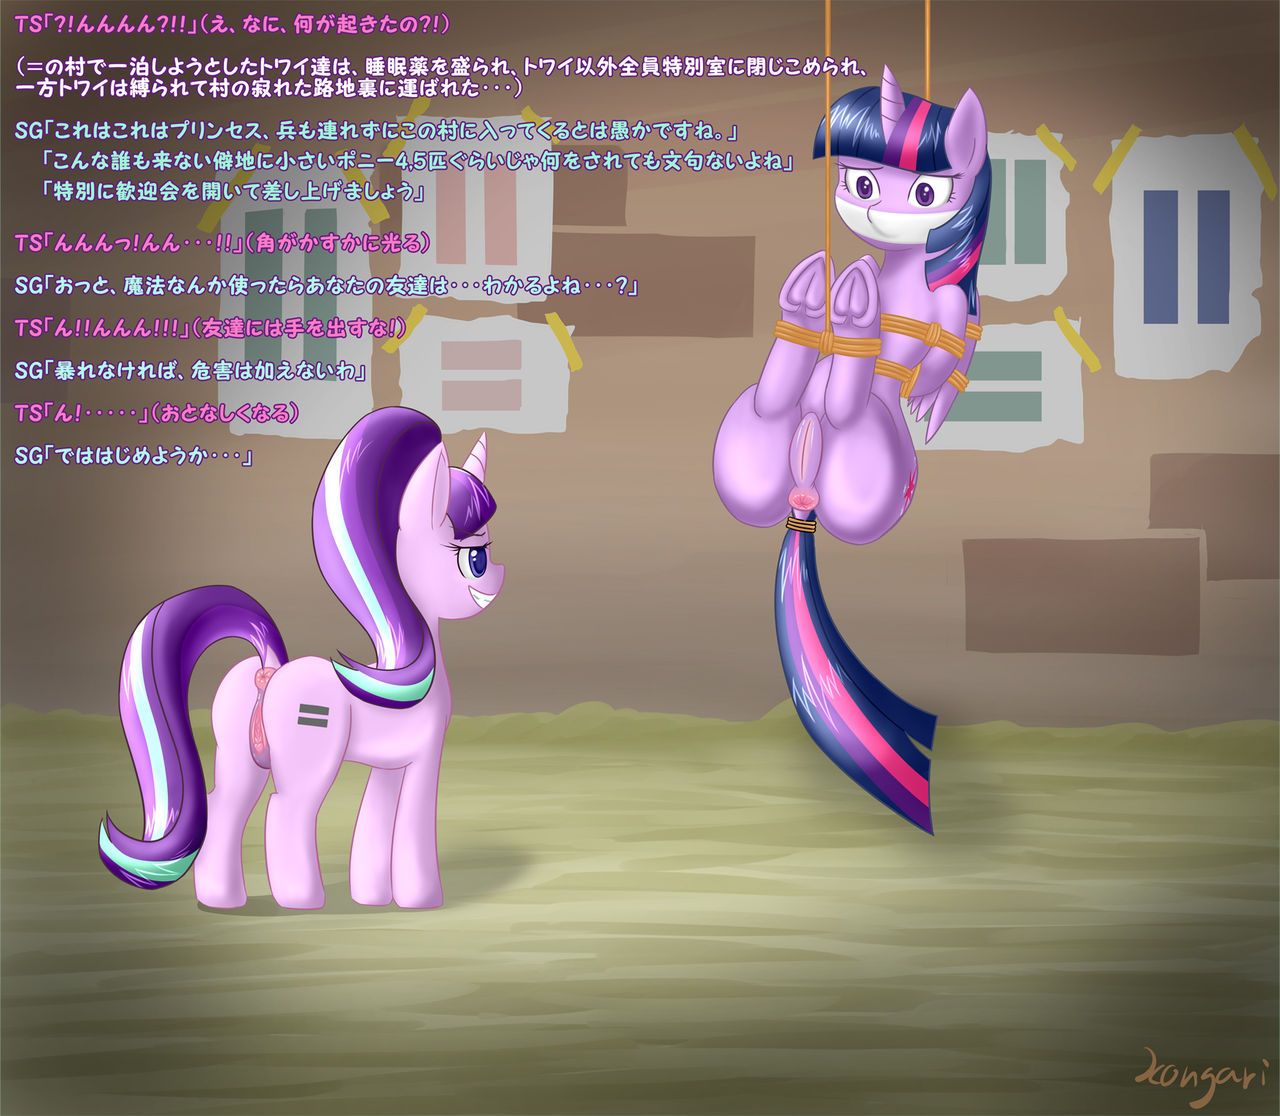 [こんがりトースト] S5E01 BAD END (parts 1-2) (My Little Pony: Friendship is Magic) 2